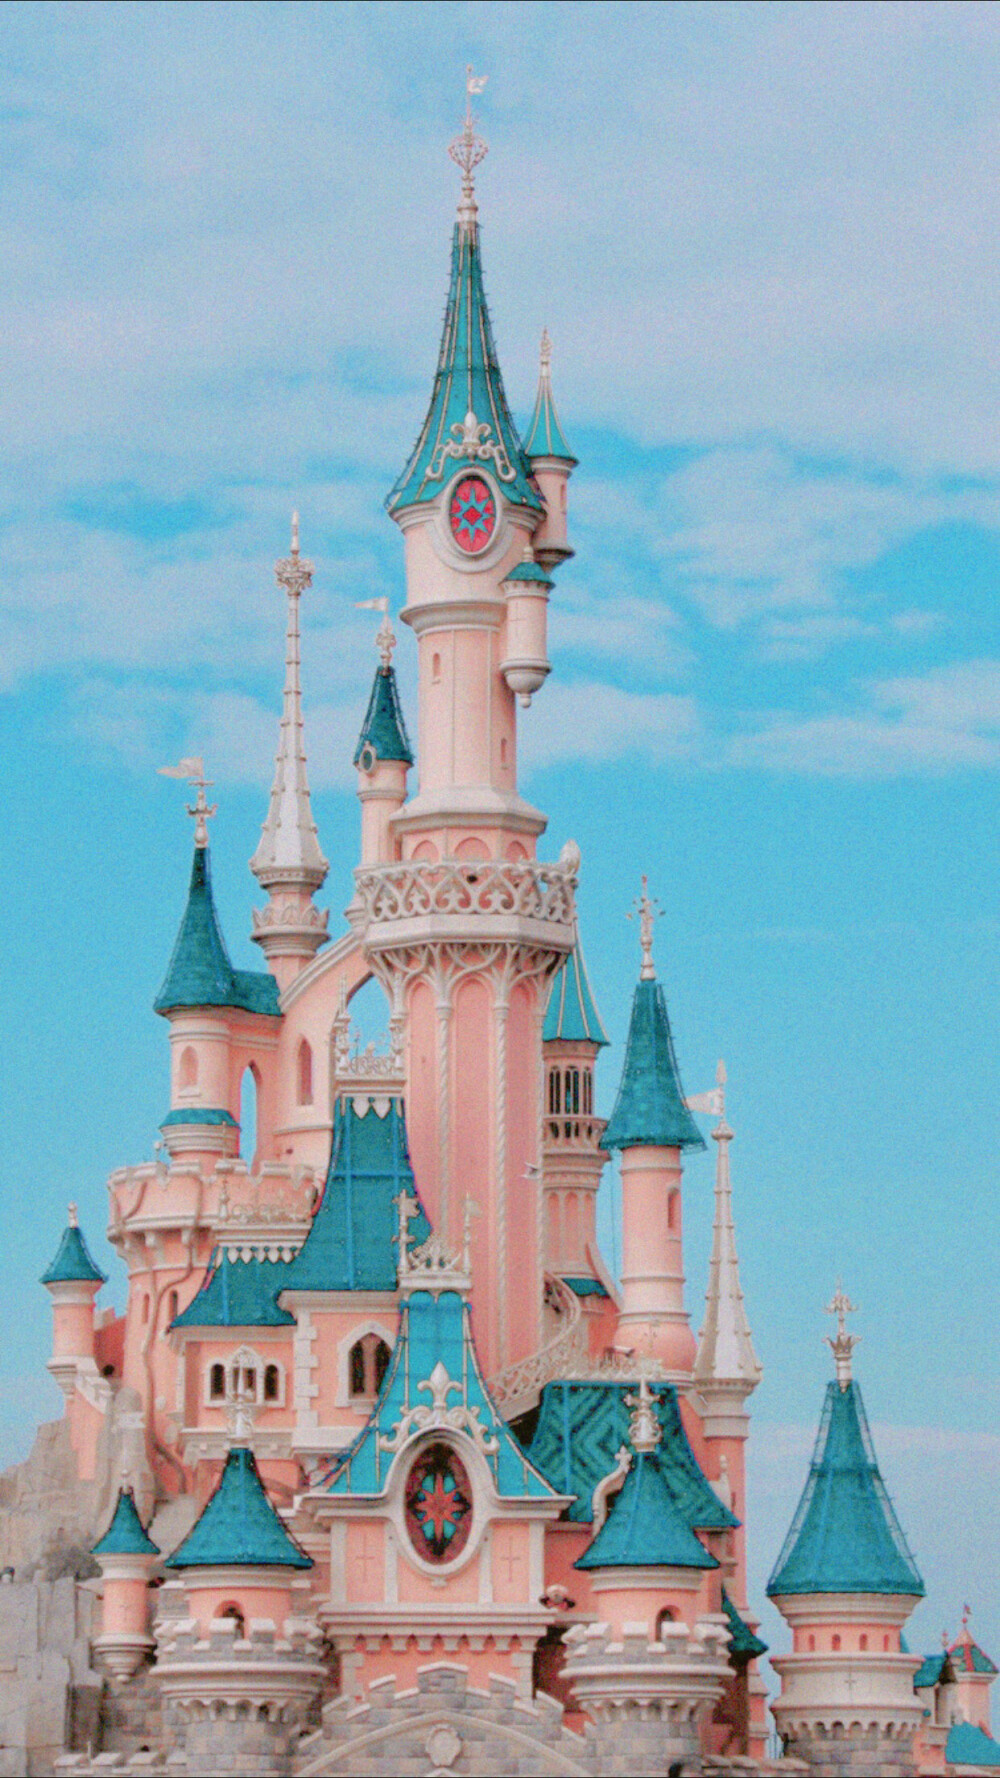 迪士尼城堡锁屏图片